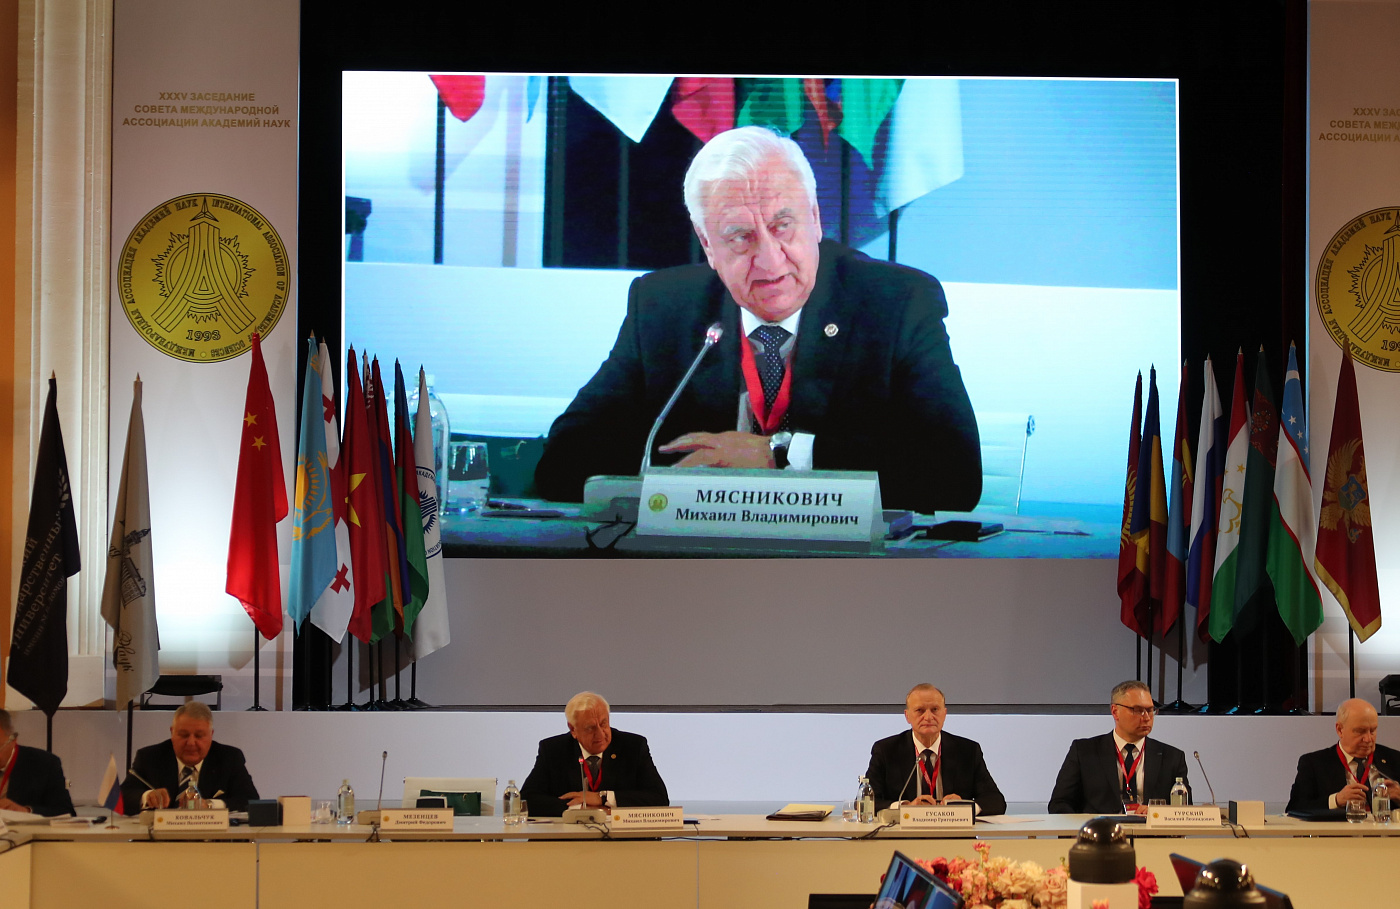 Михаил Мясникович: «Экономический рост в ЕАЭС может быть обеспечен за счет активного наращивания внутренних инвестиций»